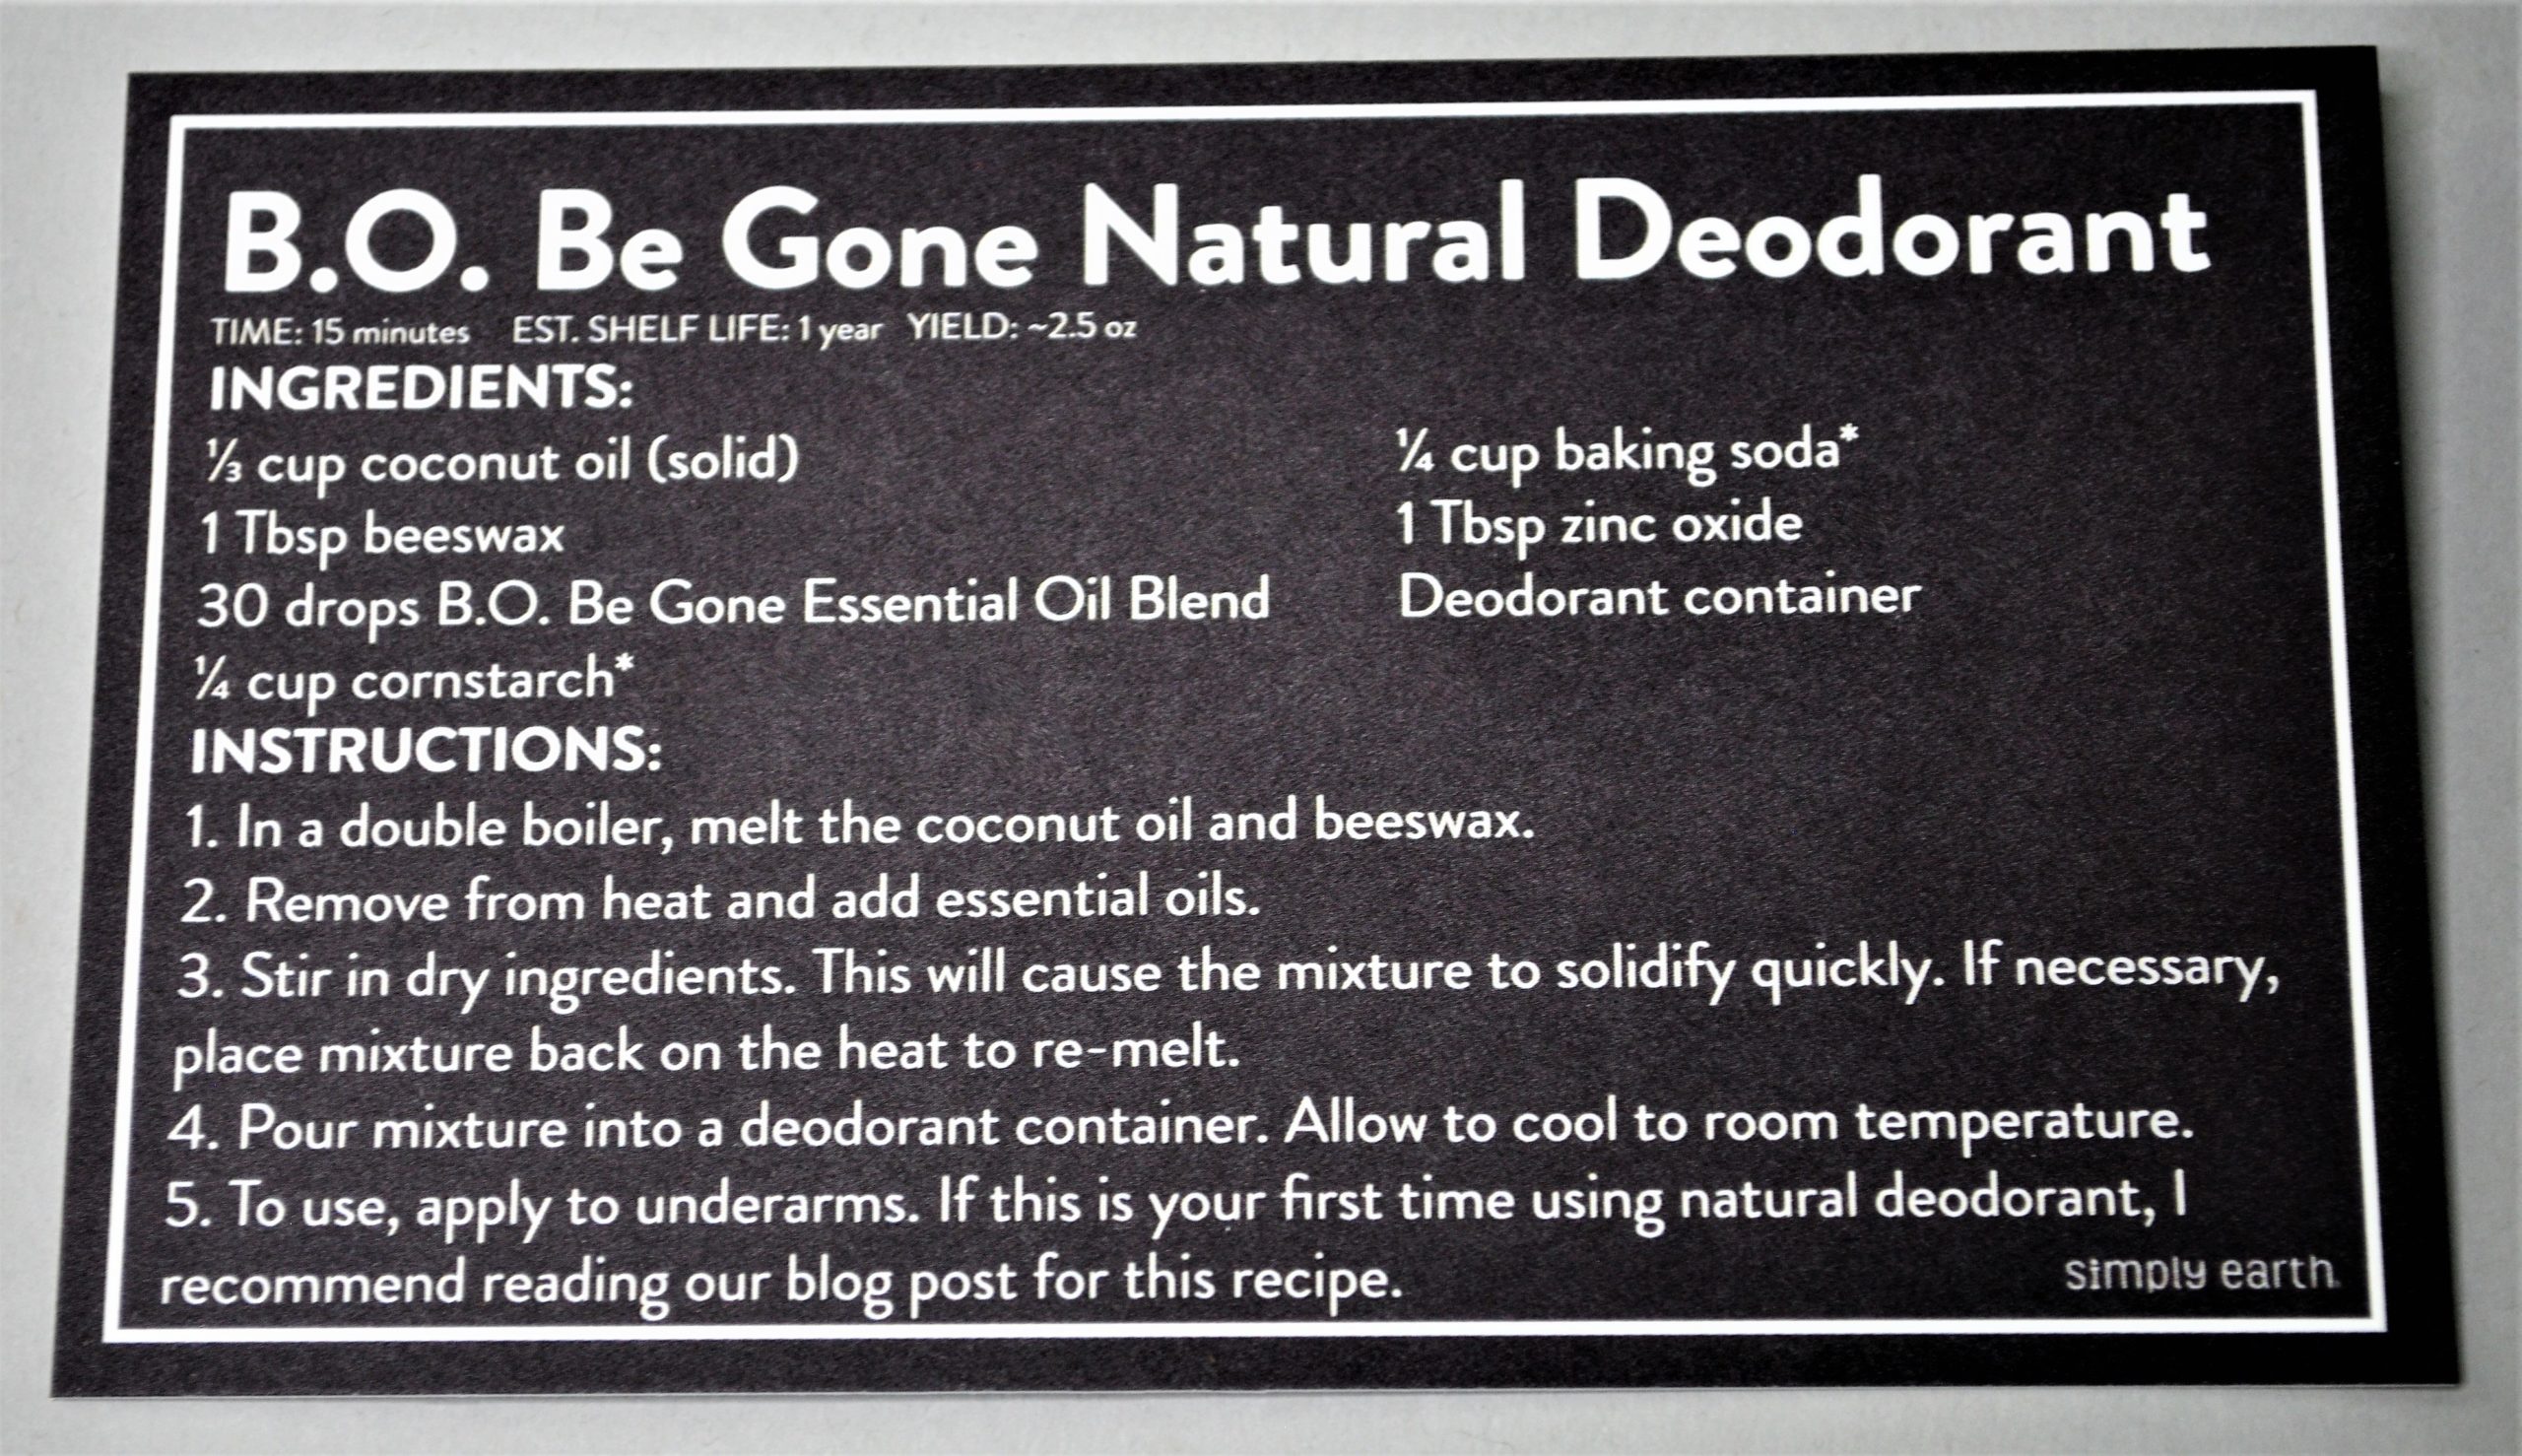 B.O. Be Gone Natural Deodorant Recipe Card